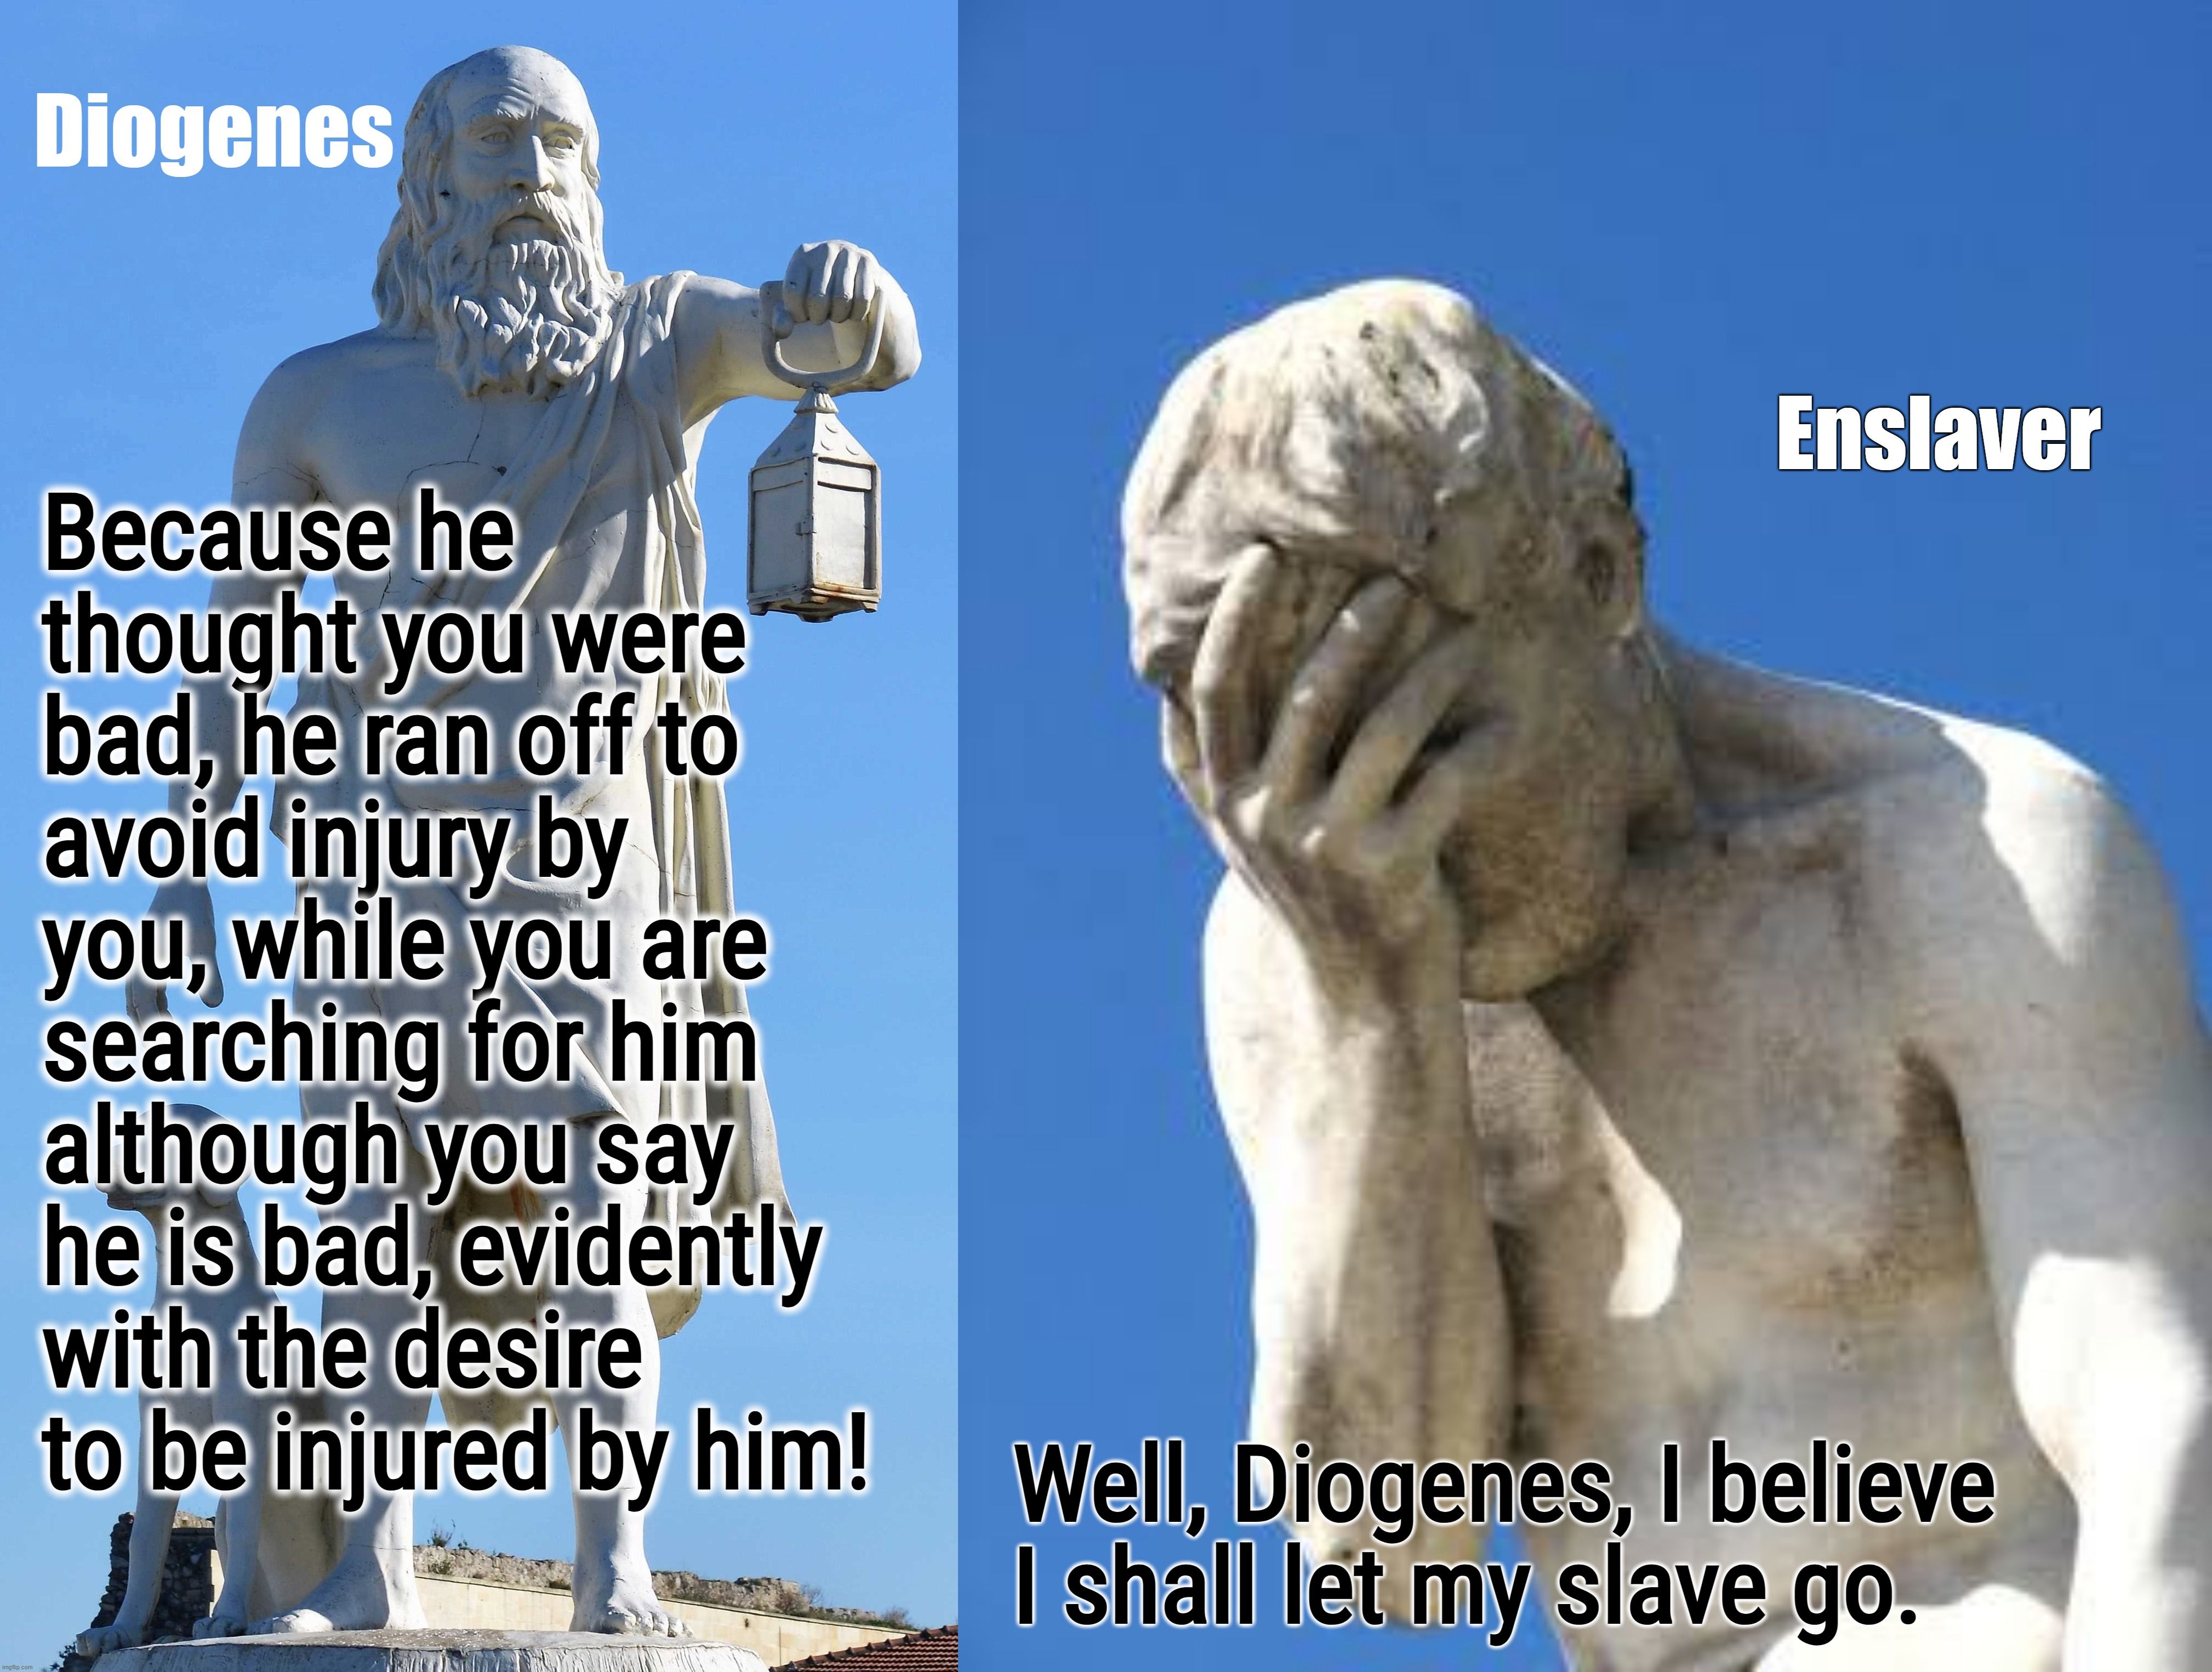 Diogenes scolds enslaver